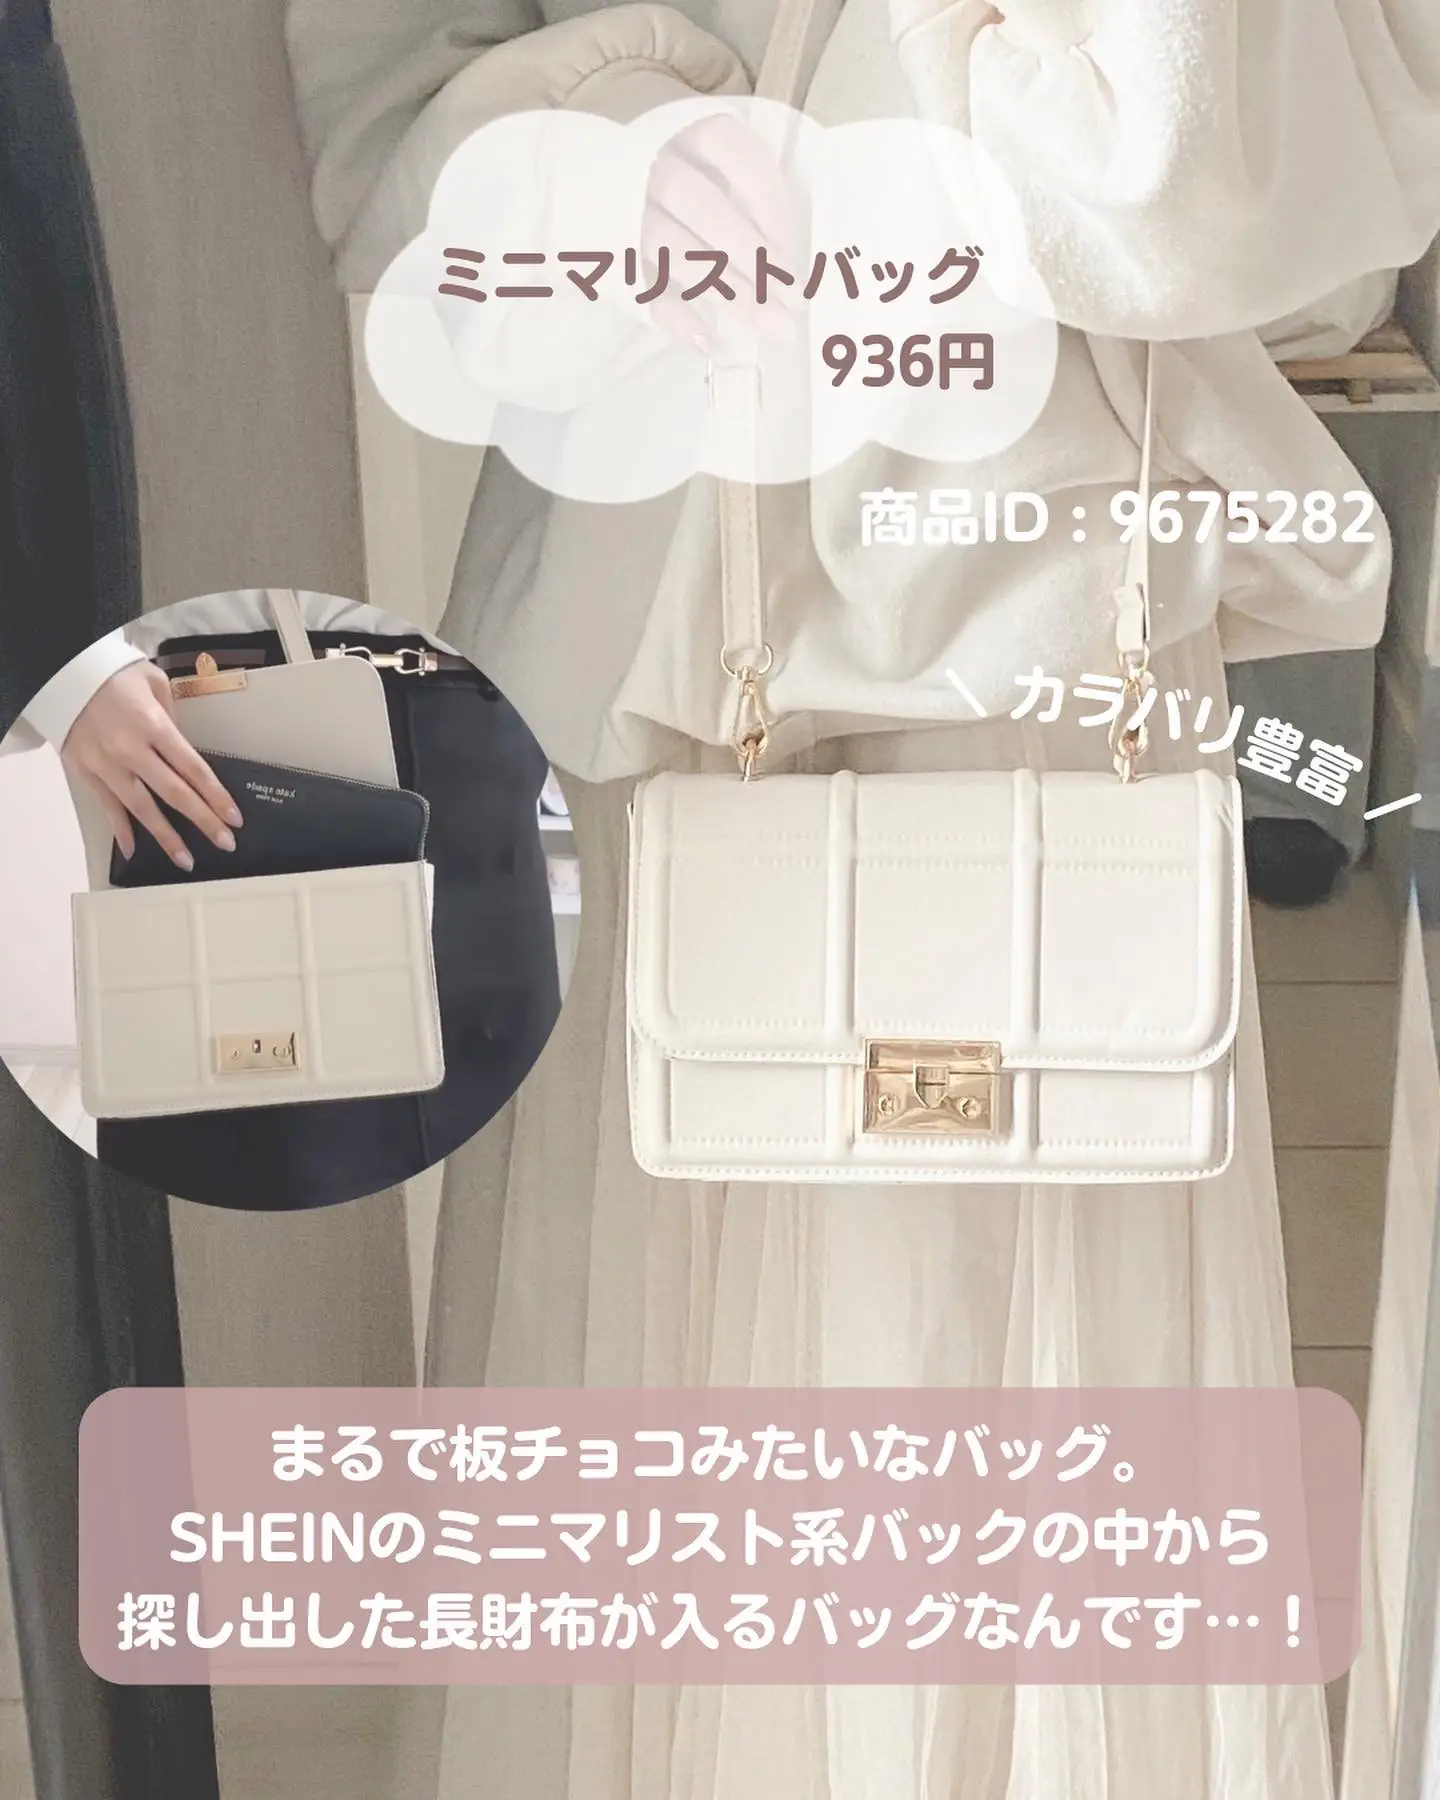 SHEIN購入品 〜インテリア・小物〜の画像 (6枚目)